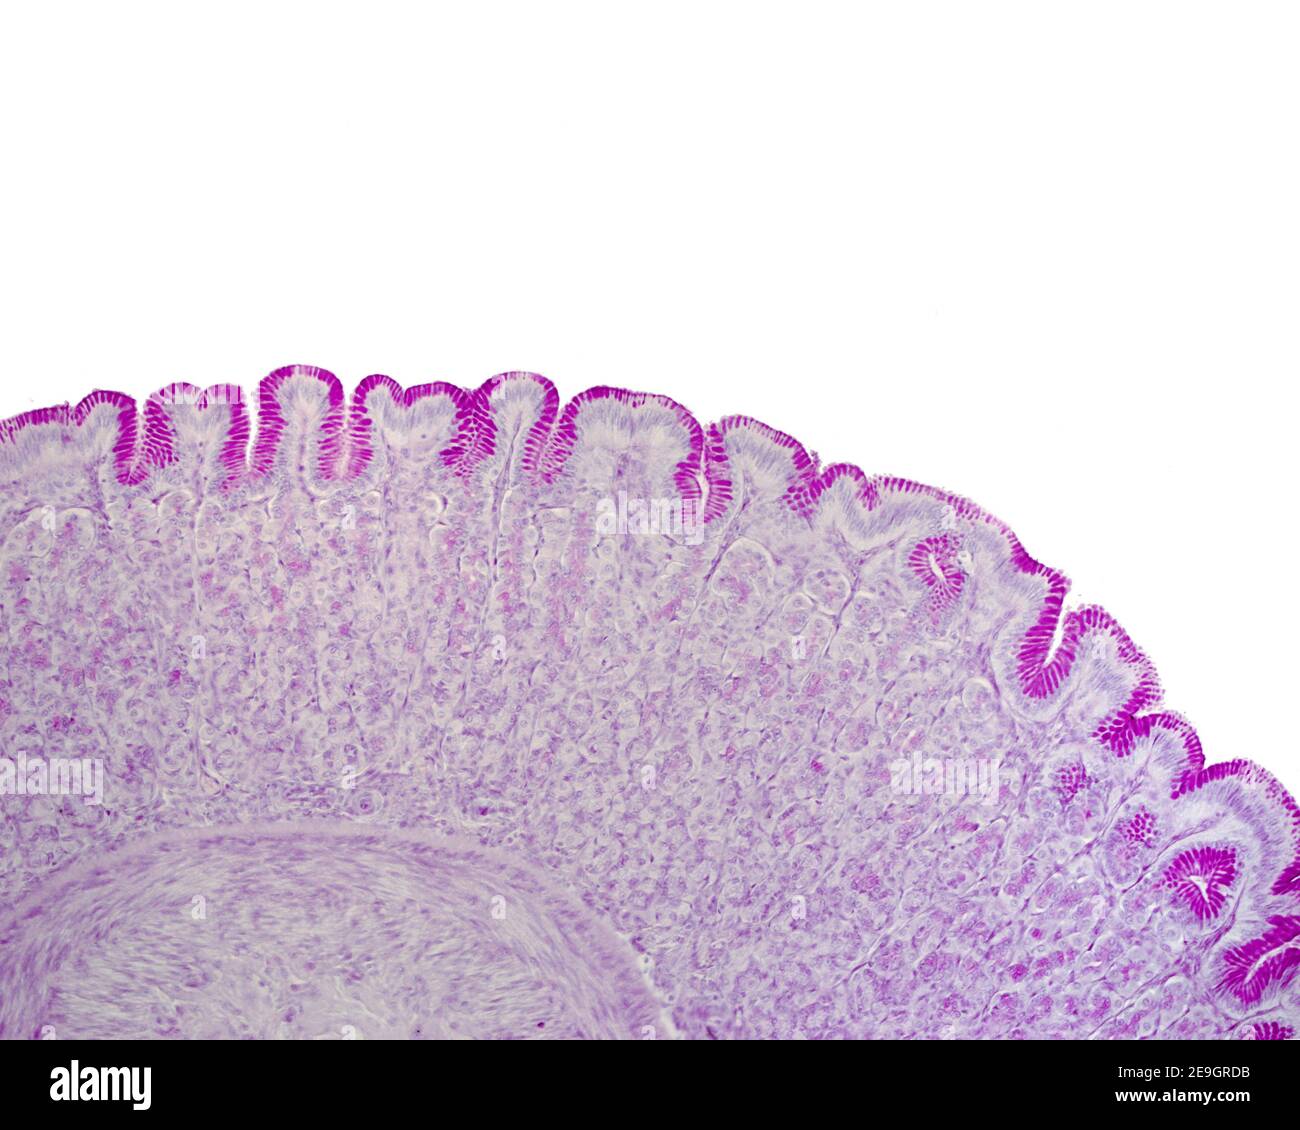 Muqueuse gastrique colorée avec la technique de l'acide périodique Schiff (pas) Montrant la positivité intense du pas de l'épithélium de surface et du fovéolaire cellules Banque D'Images